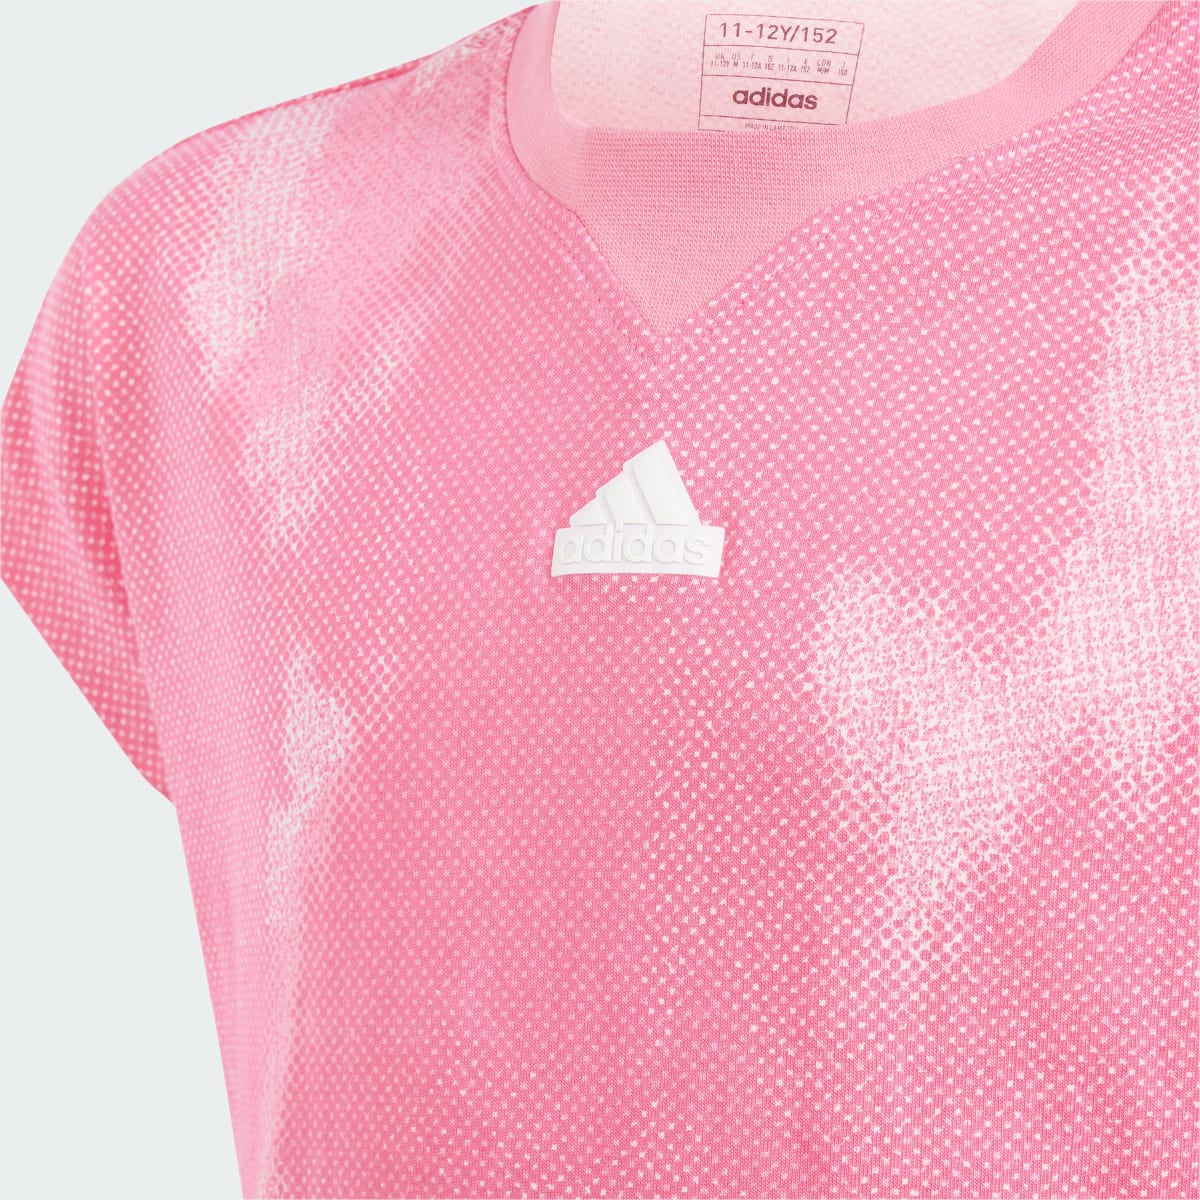 Adidas Koszulka Future Icons Allover Print Cotton Kids. 4